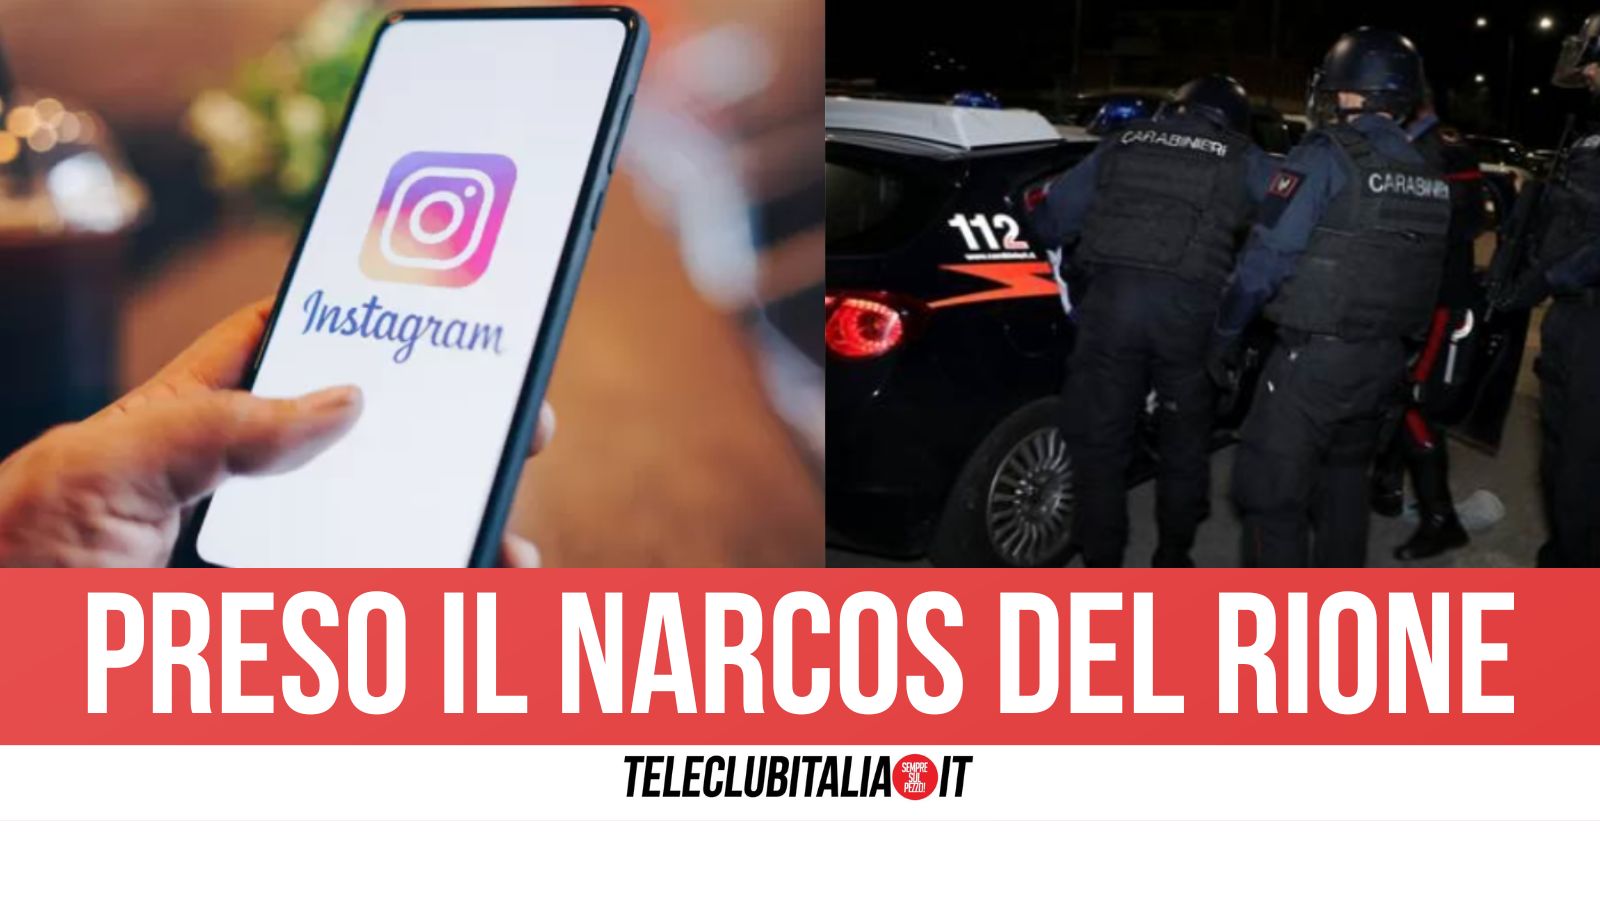 Napoli, parenti influencer tradiscono il 39enne ricercato. Arrestato dopo stories su Instagram